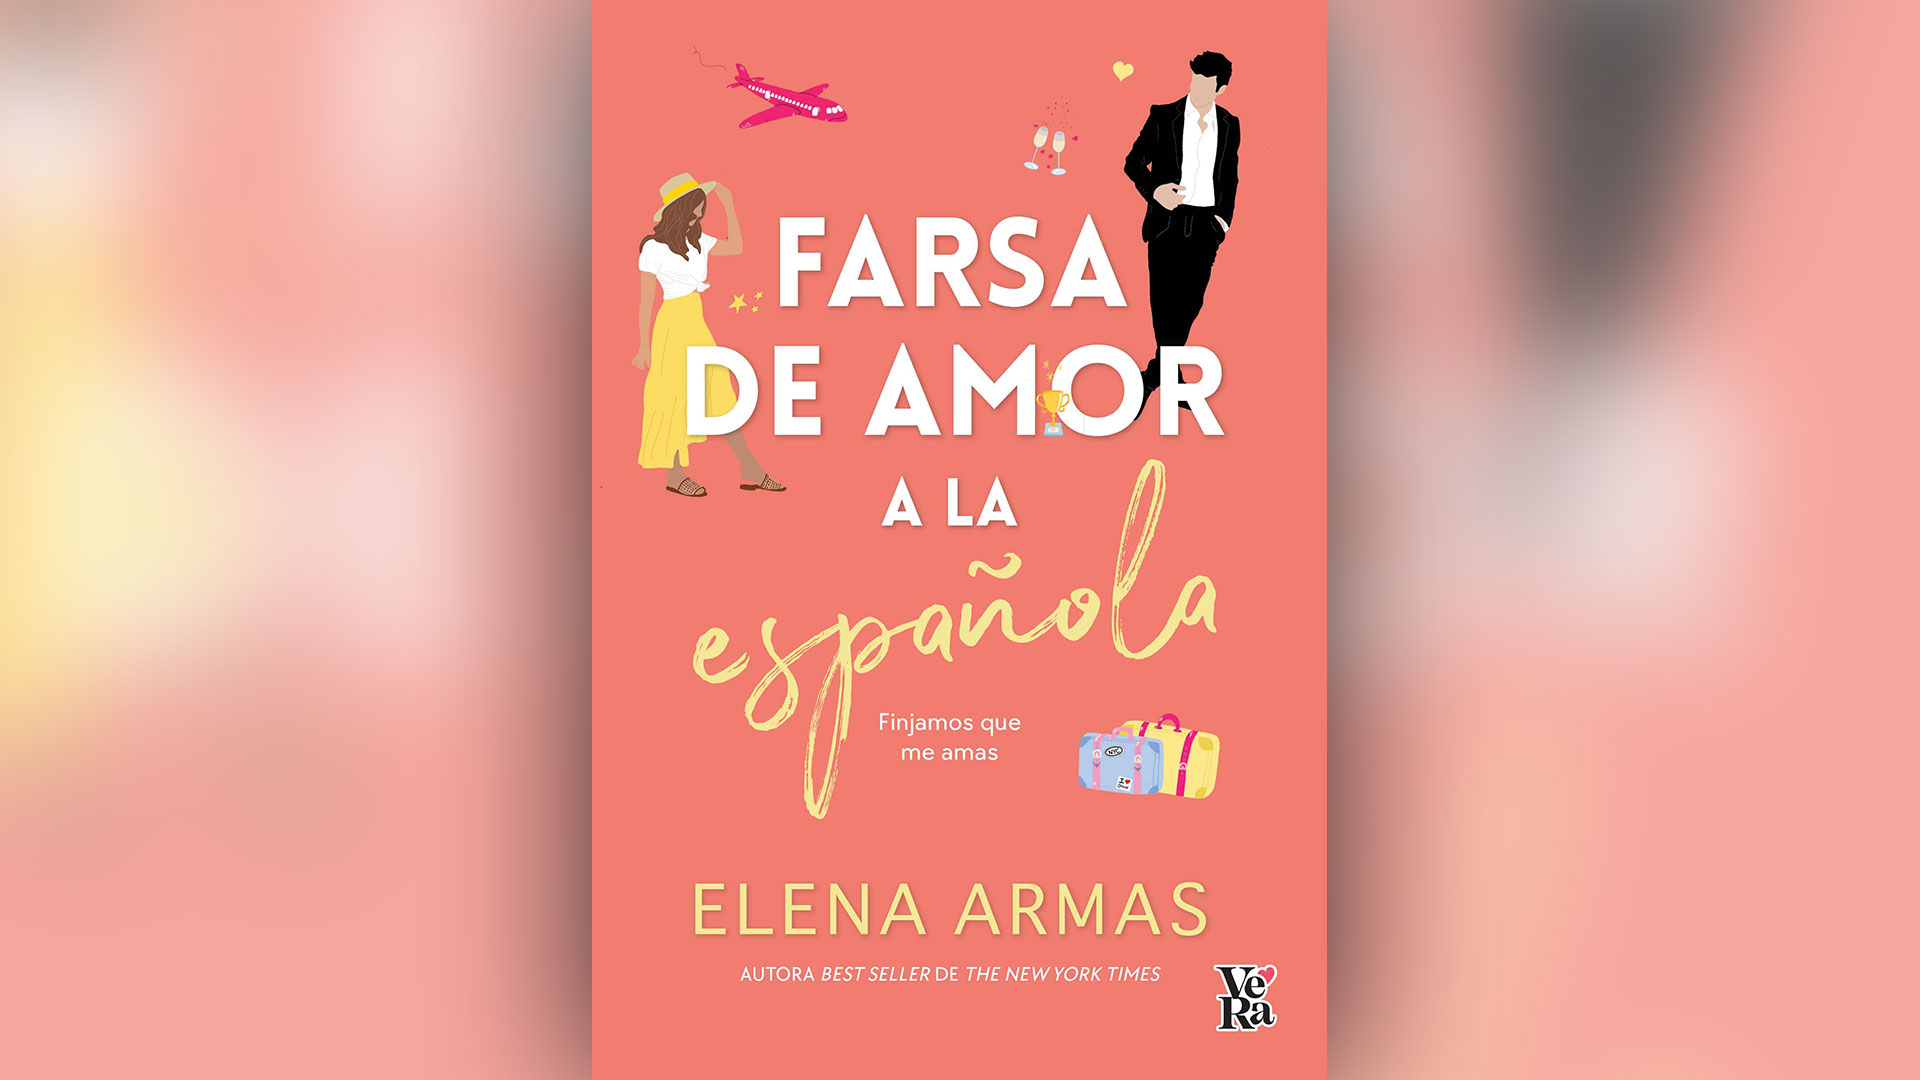 El debut de Elena Armas, "Farsa de amor a la española", arrancó como una publicación independiente de la autora pero, tras su masivo éxito en TikTok, terminó siendo editado en más de 25 países. 